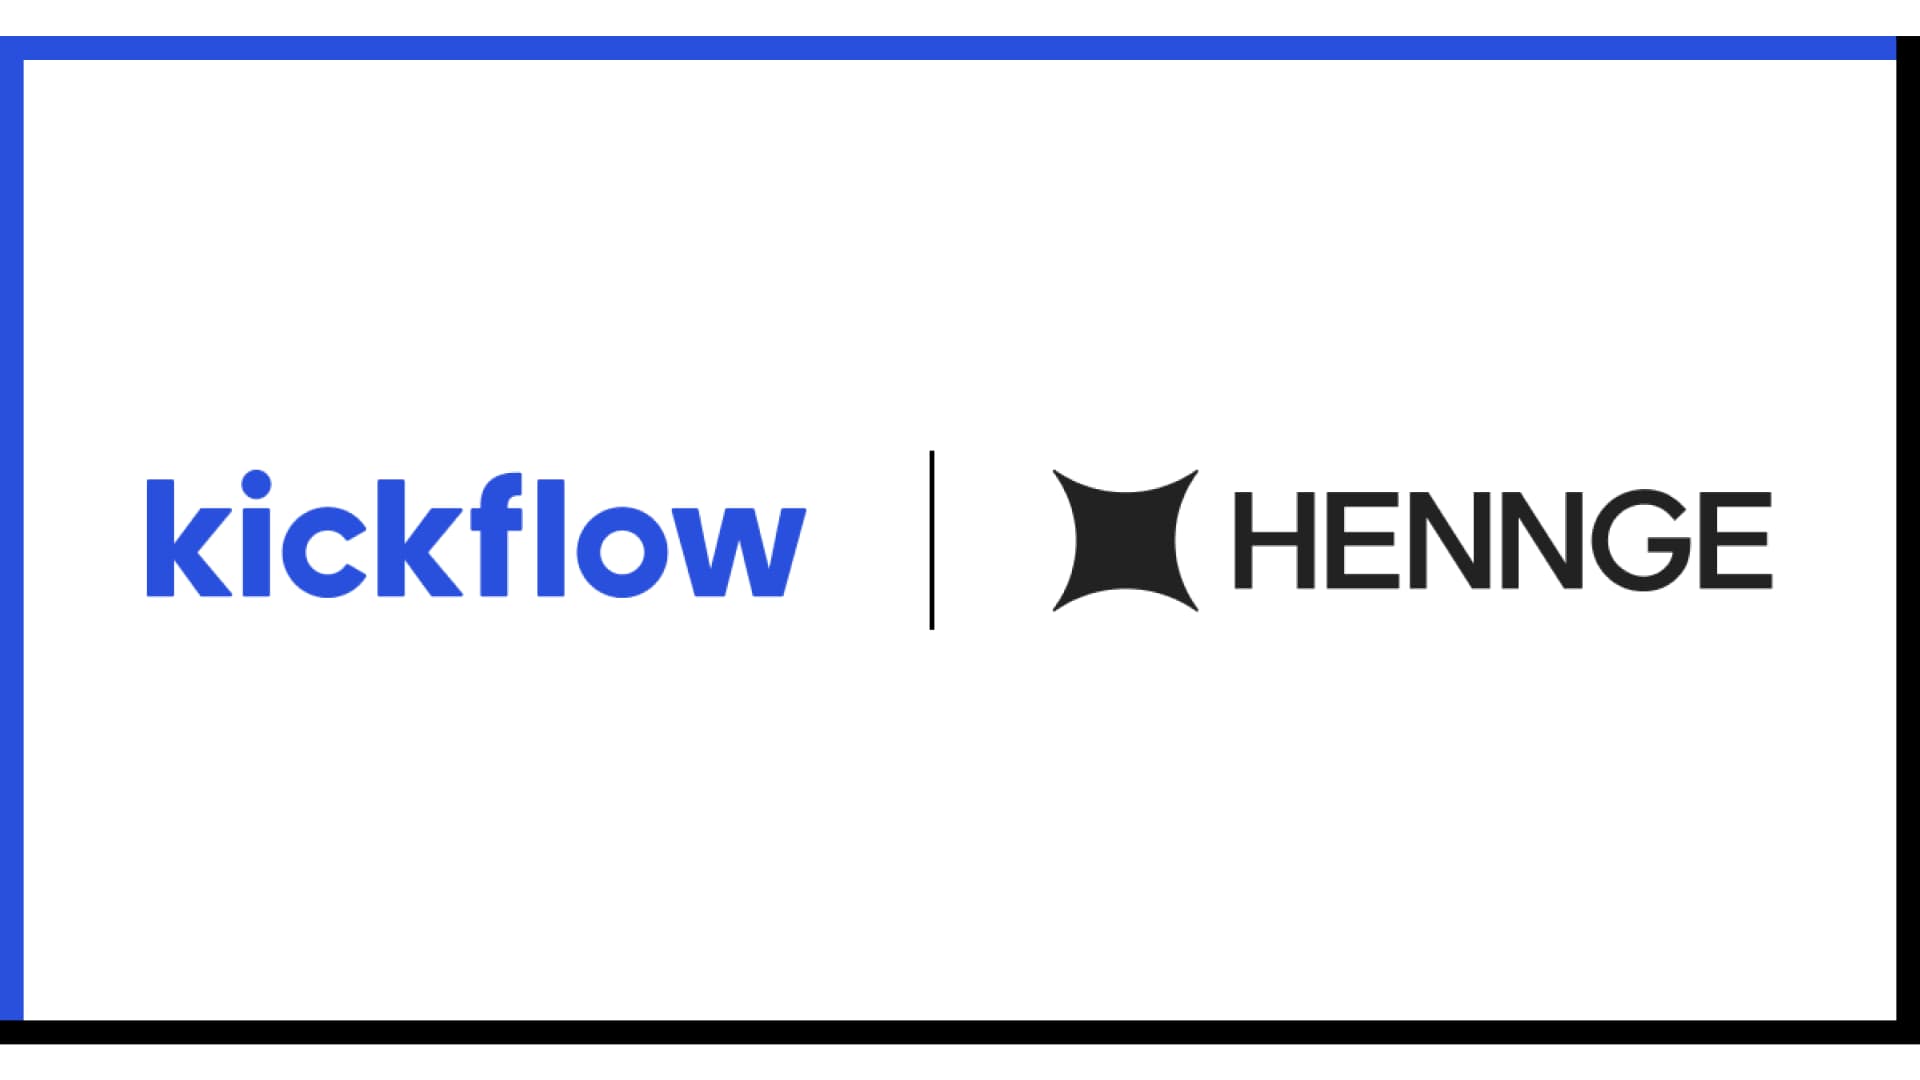 株式会社kickflow、HENNGEから業務提携を前提としたプレシリーズAラウンドの資金調達を実施